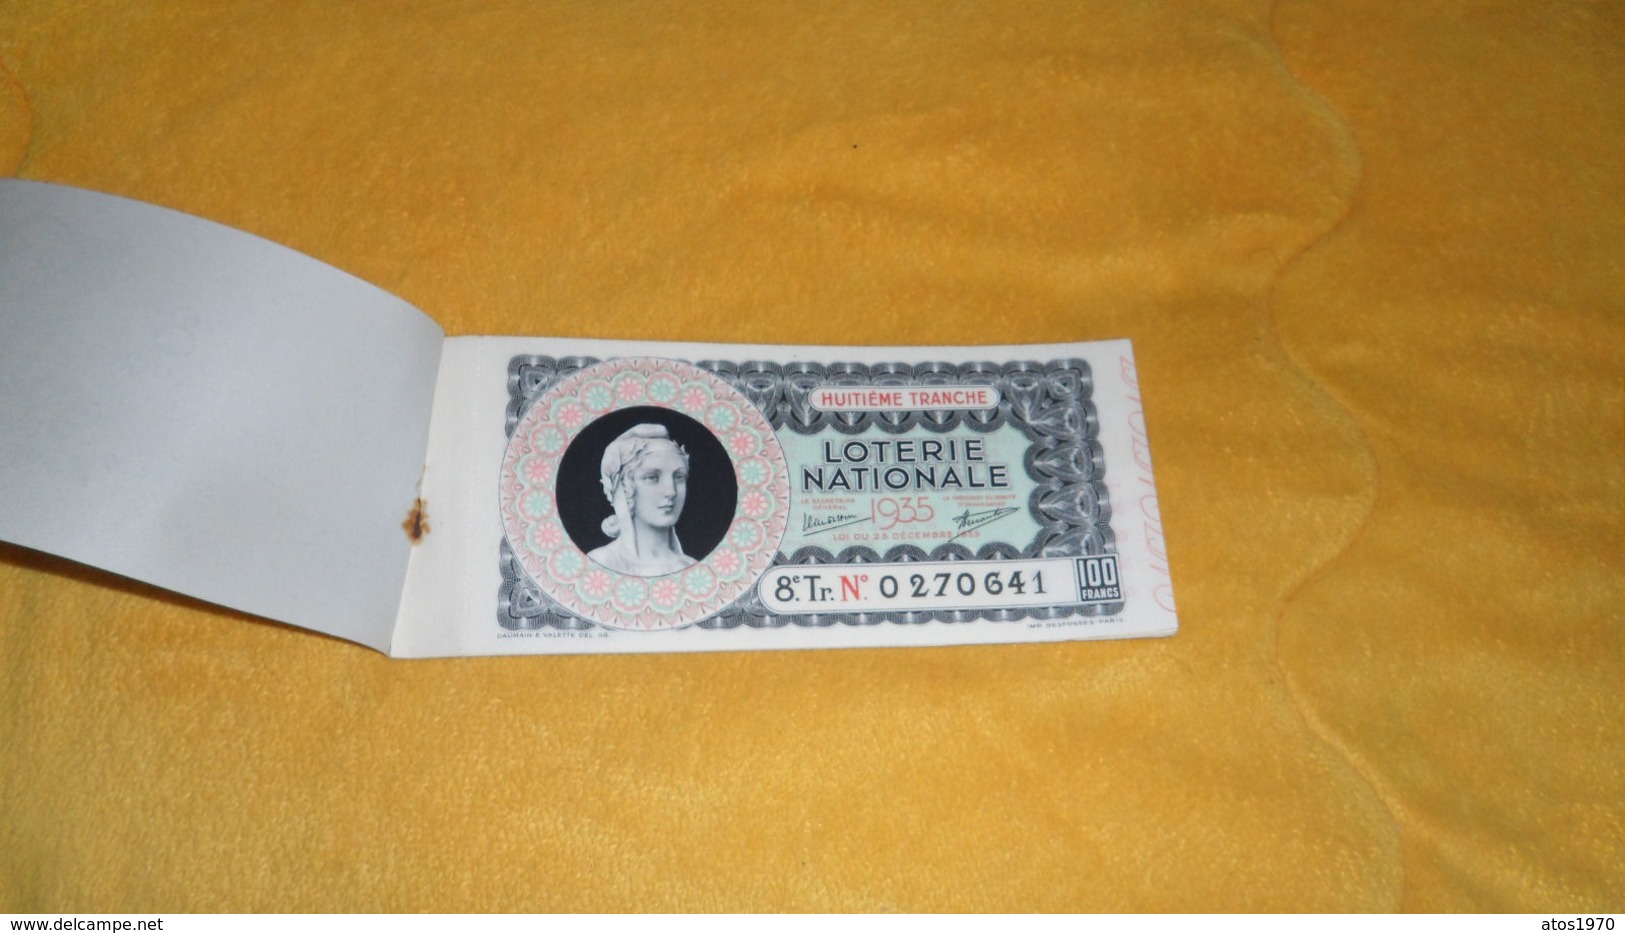 CARNET DE TICKET 100 FRANCS DE LOTERIE NATIONALE 1935 / 9 BILLETS 8e TRANCHE - Lottery Tickets